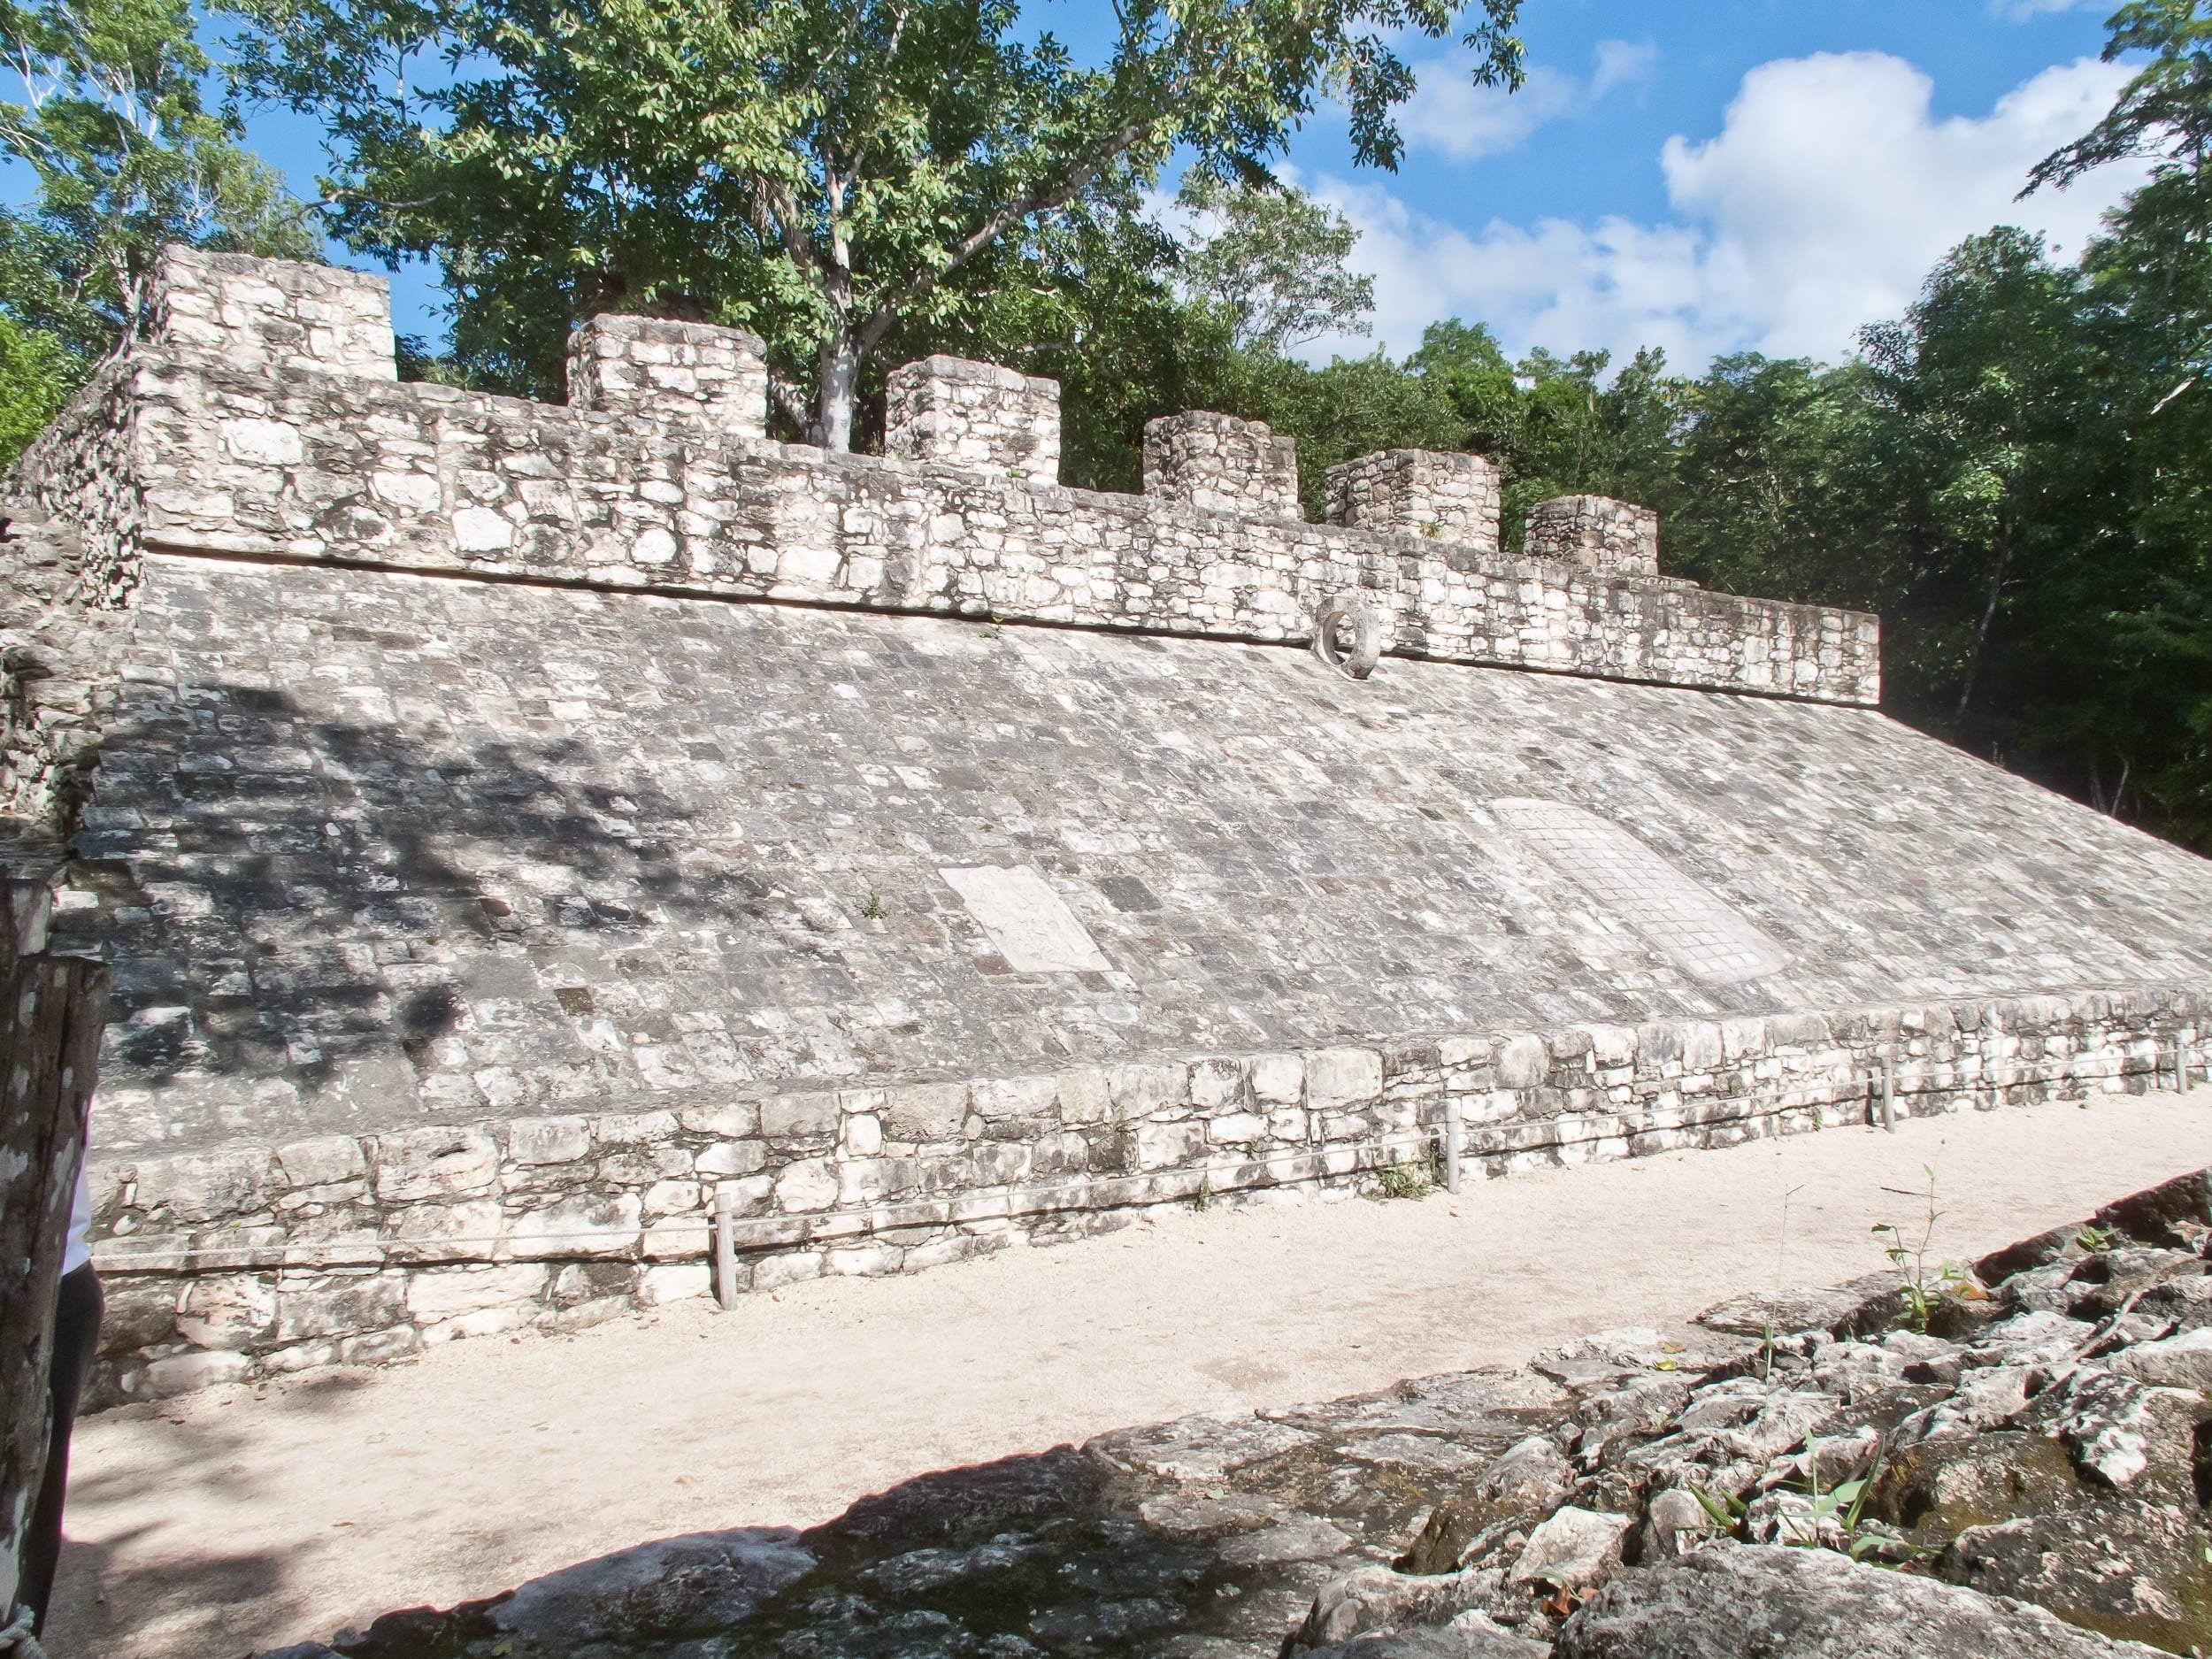 Imagen de uno de los laterales de la pista utilizada en Los Juegos de Pelota mayas de Cobá